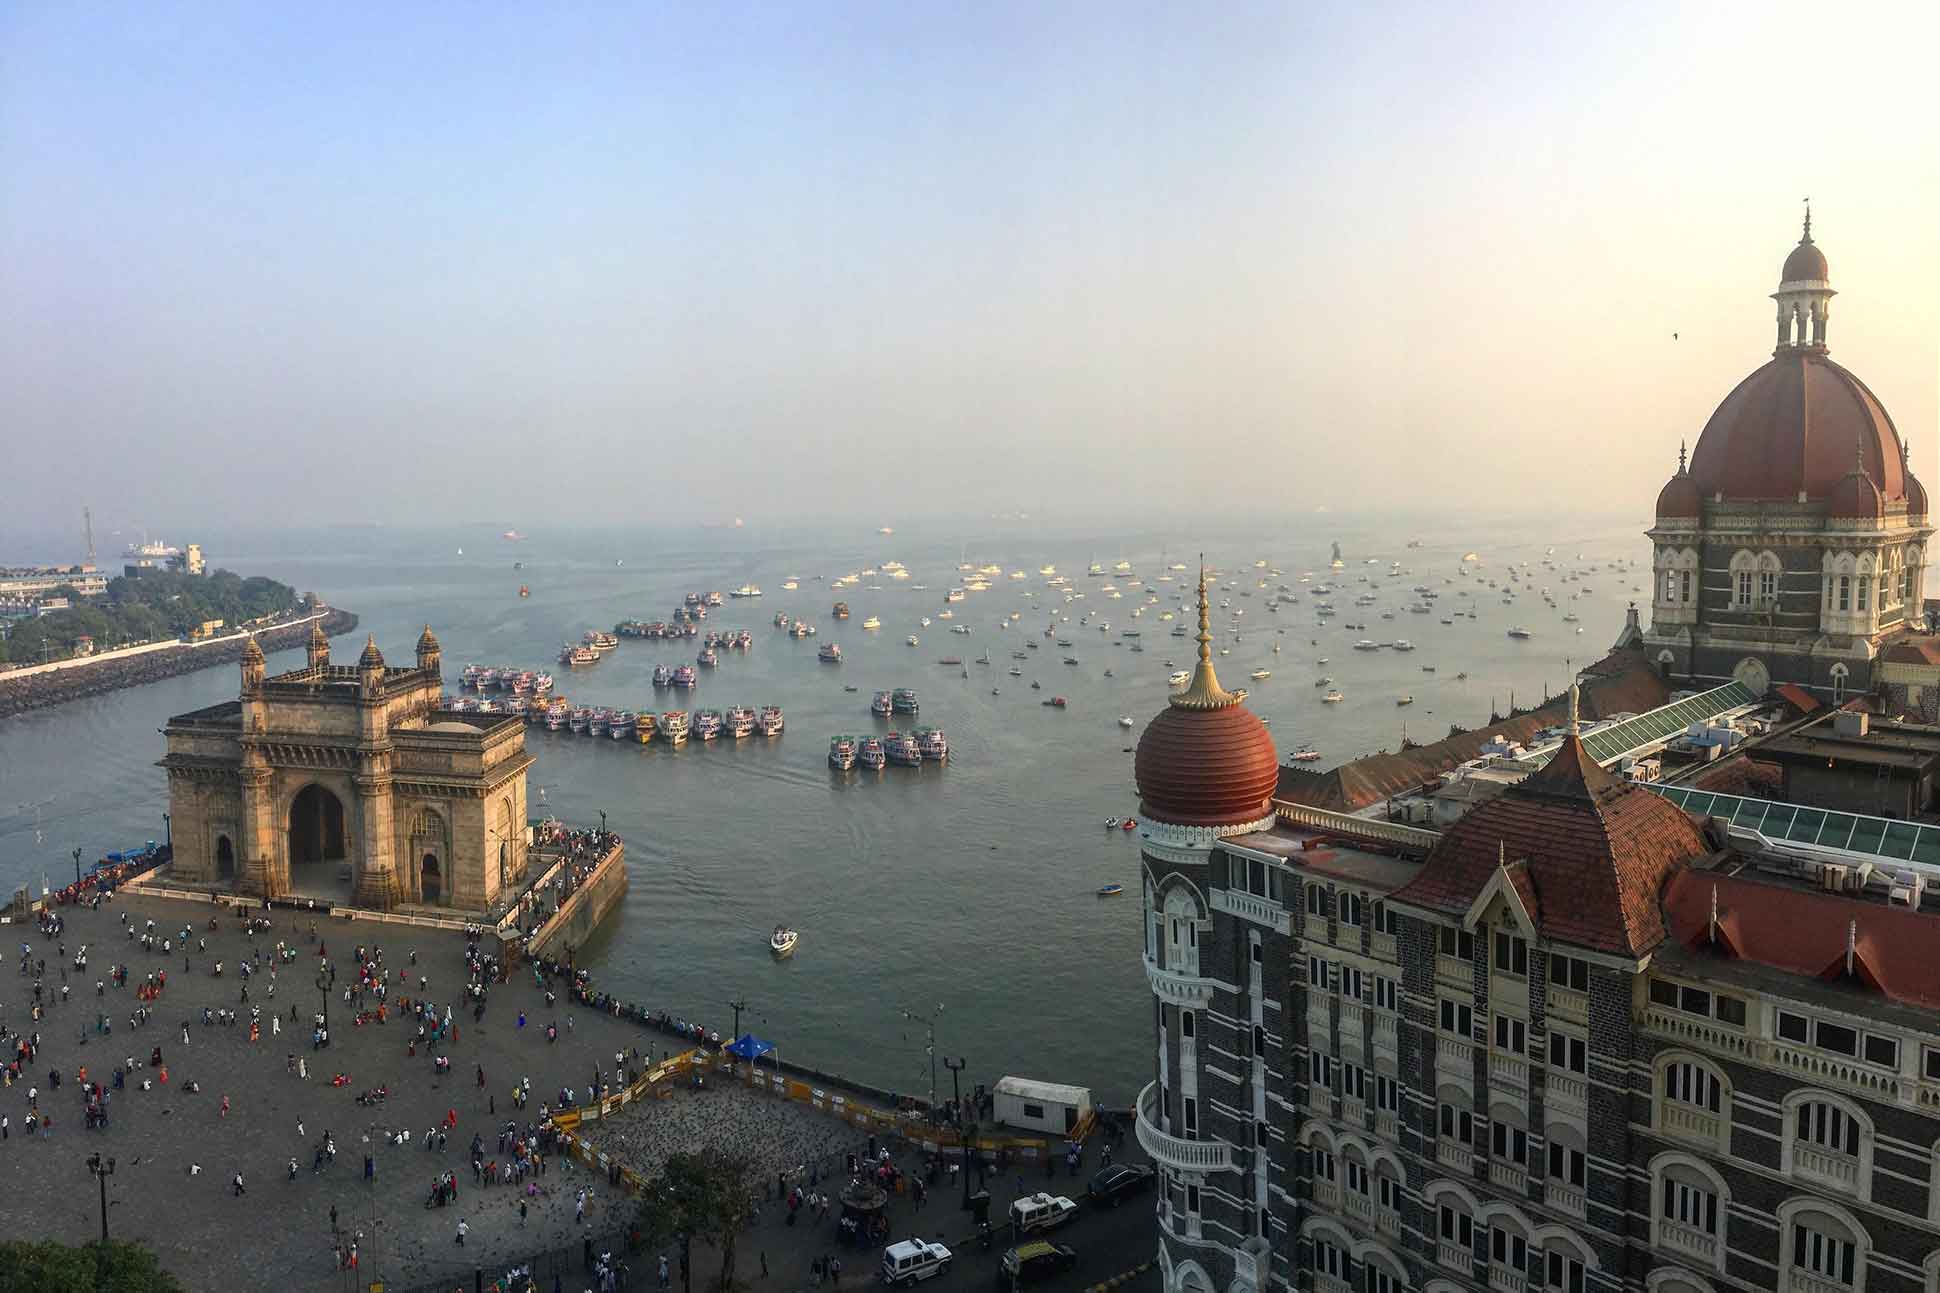 The Taj Mumbai